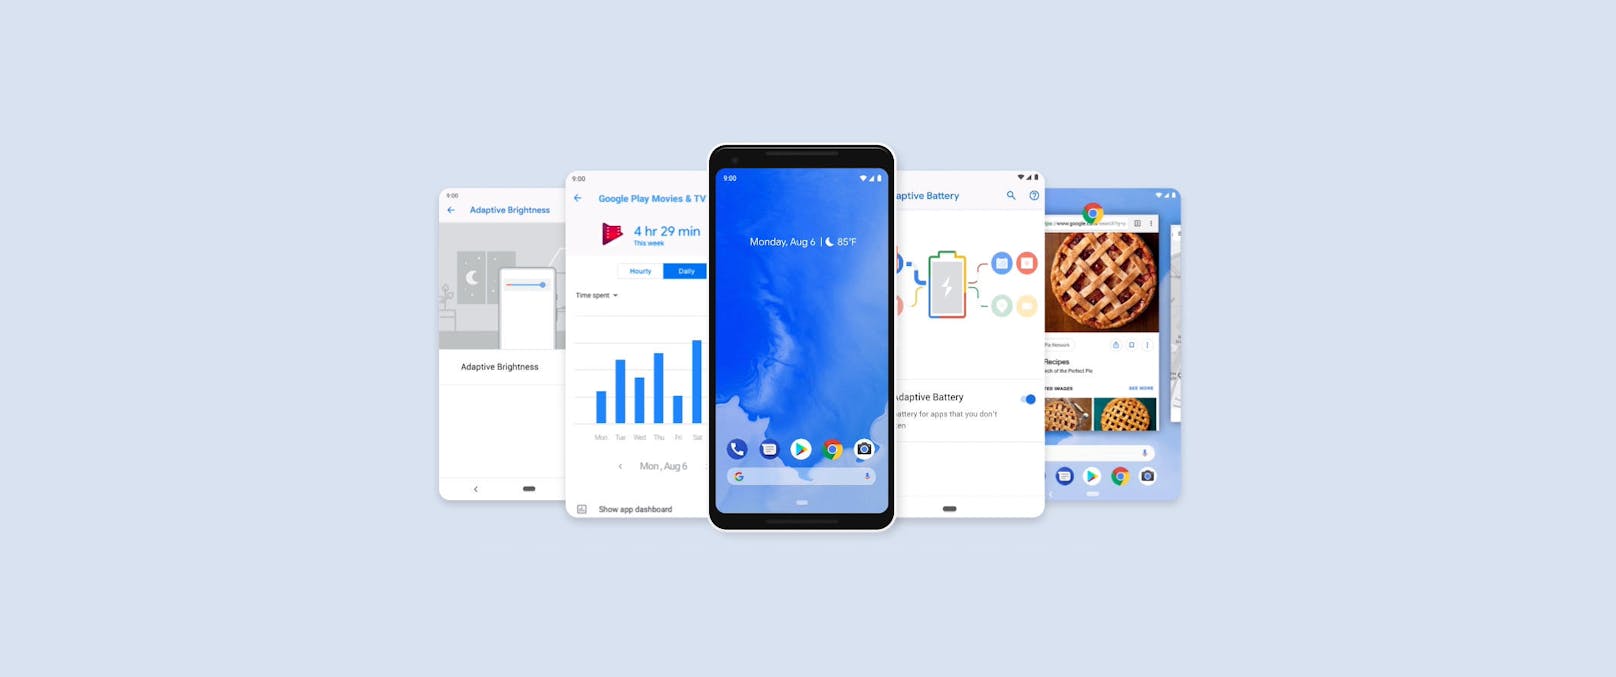 Android 9 alias Pie ist ab sofort erhältlich. Es kann bisher auf den Geräten, die auch beim Beta-Programm mitgemacht haben, installiert werden. Namentlich sind das jene der Hersteller Sony Mobile, Xiaomi, HMD Global (Nokia), Oppo, Vivo, OnePlus und Essential. Bis spätestens Ende Jahr sollen weitere große Hersteller das Pie-Update anbieten.